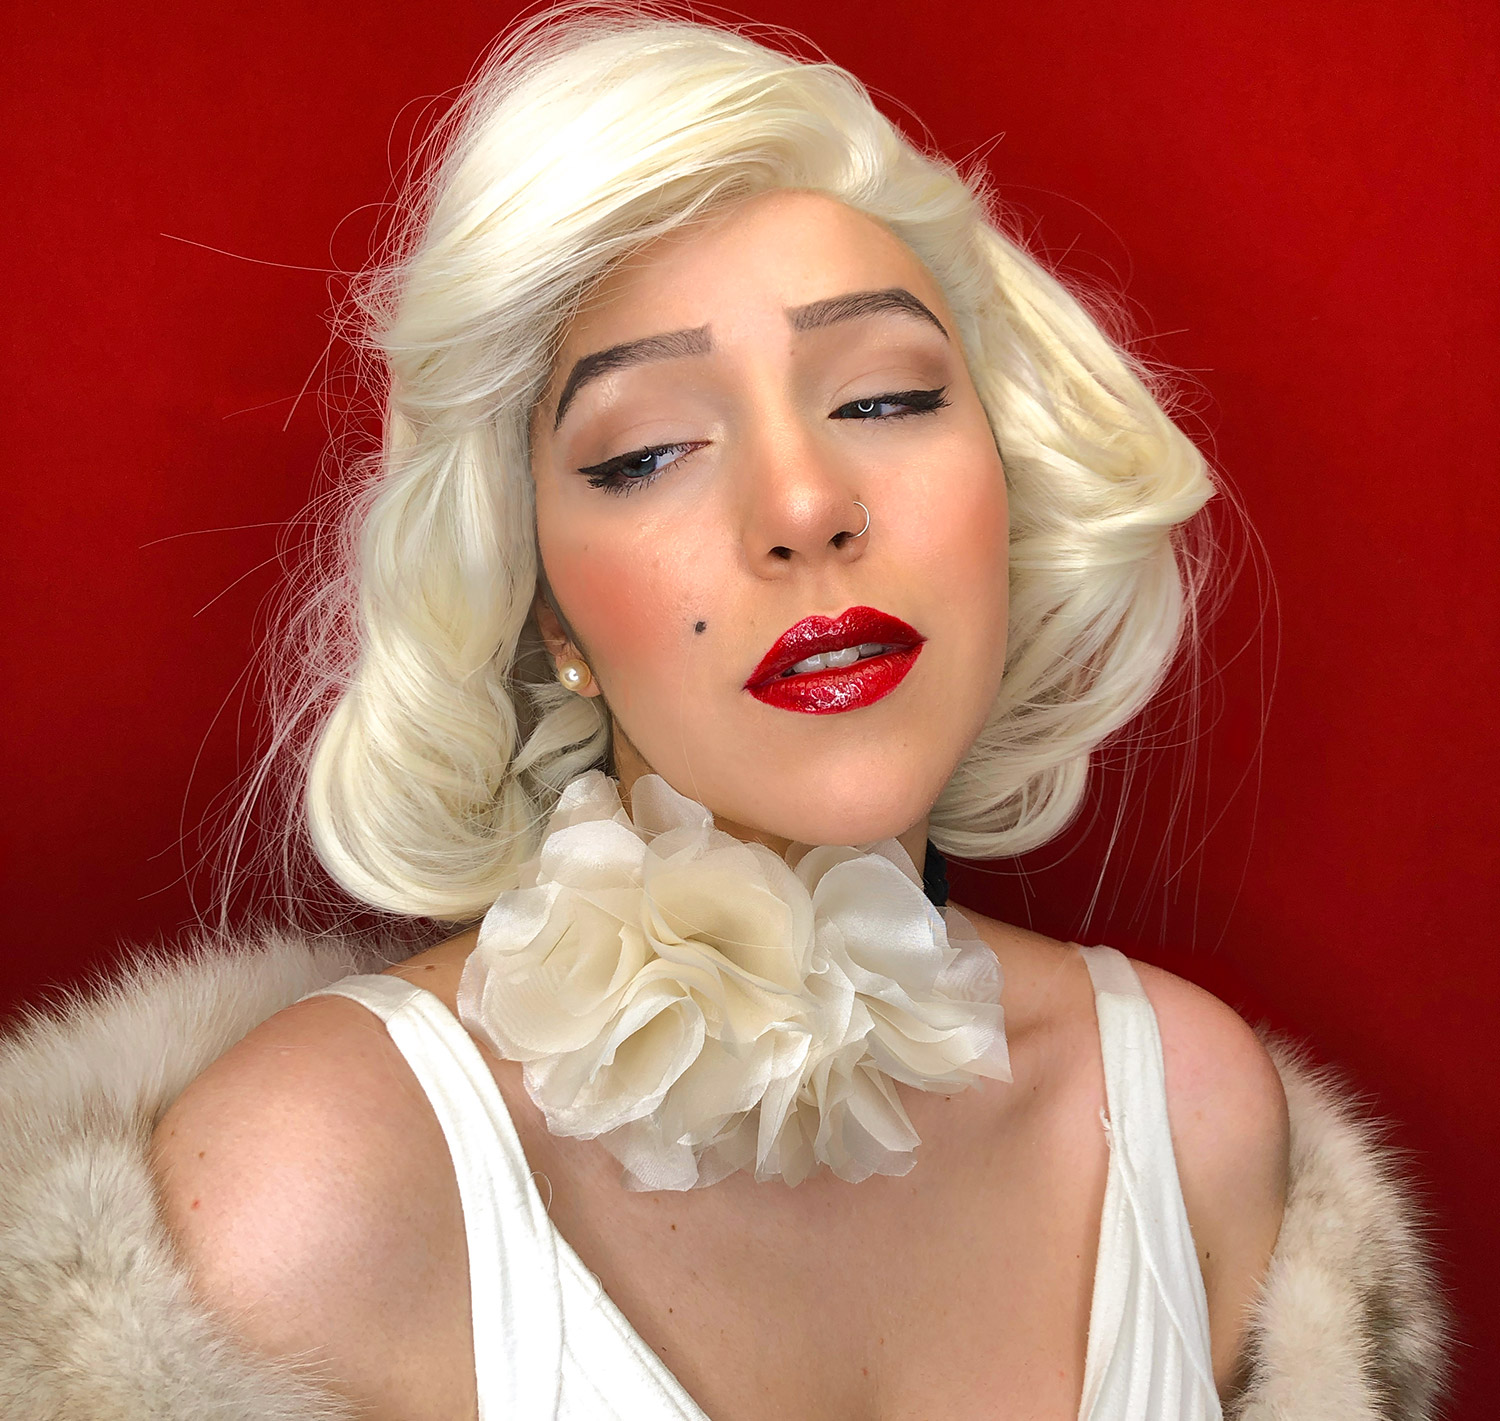 Ritratto fotografico cosplay di Marilyn Monroe, interpretata per le collane fiorite Vipuntozero